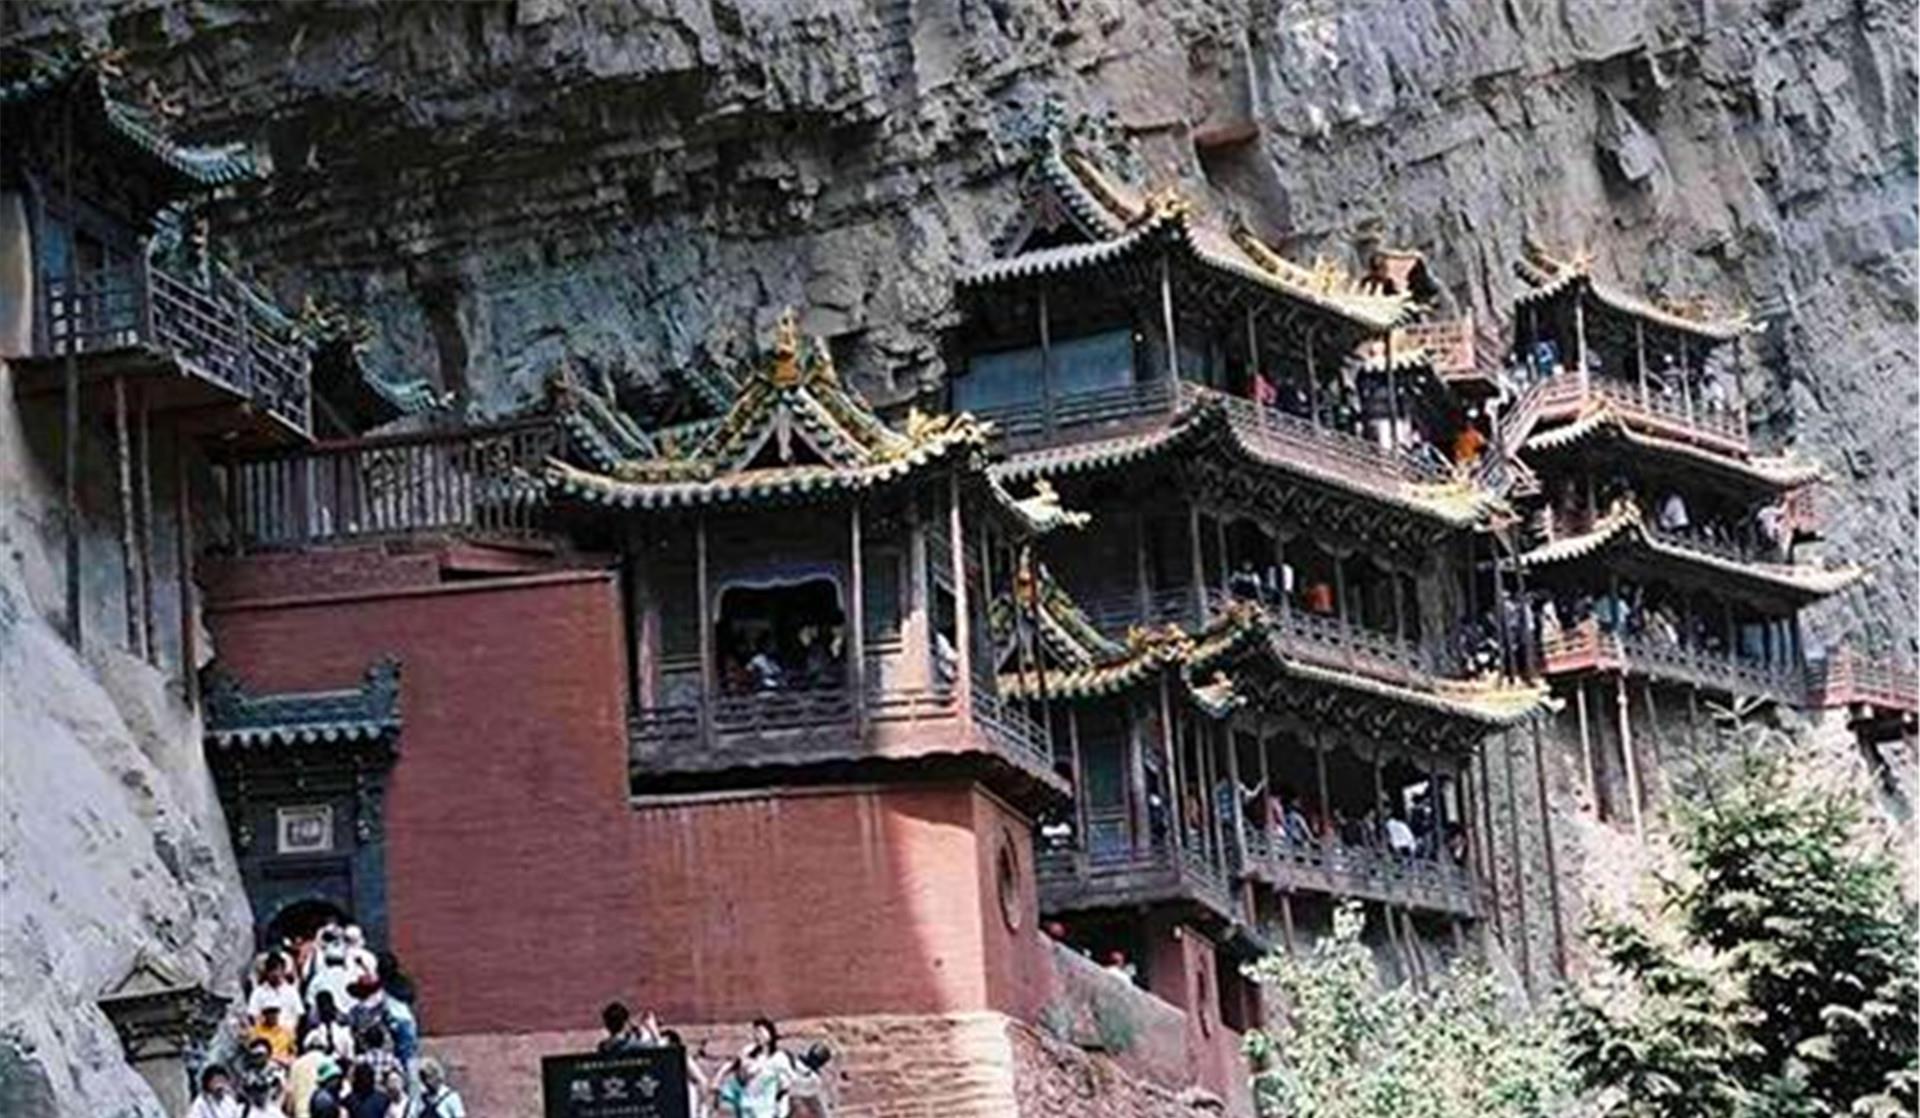 一个比少林寺悠久的寺庙，曾因挖煤遭破坏，后为吸引游客选择降价